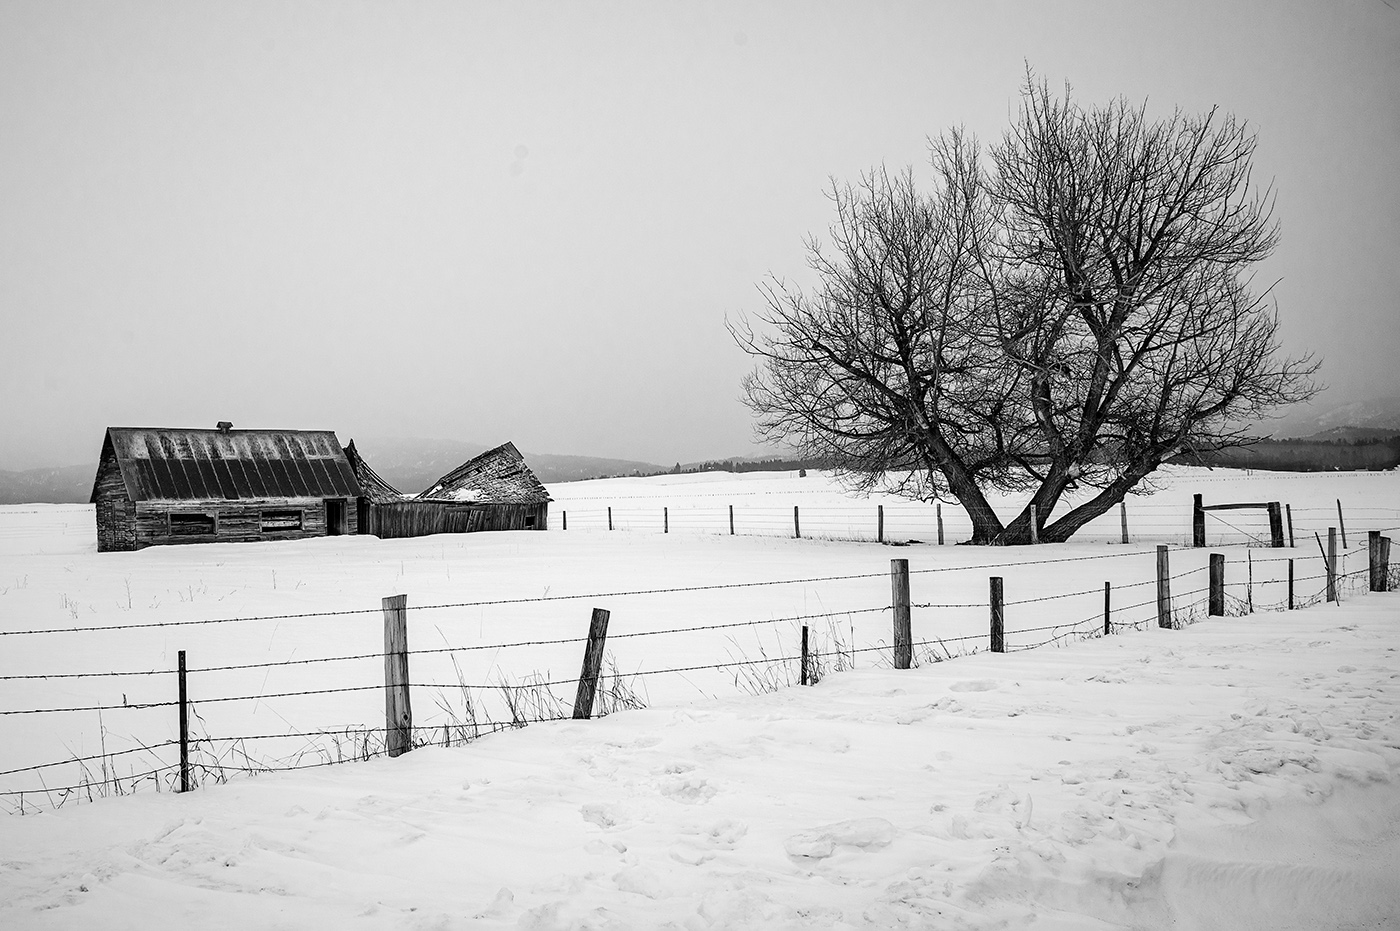 Cabarton Winter Scene by Ken Wilkes